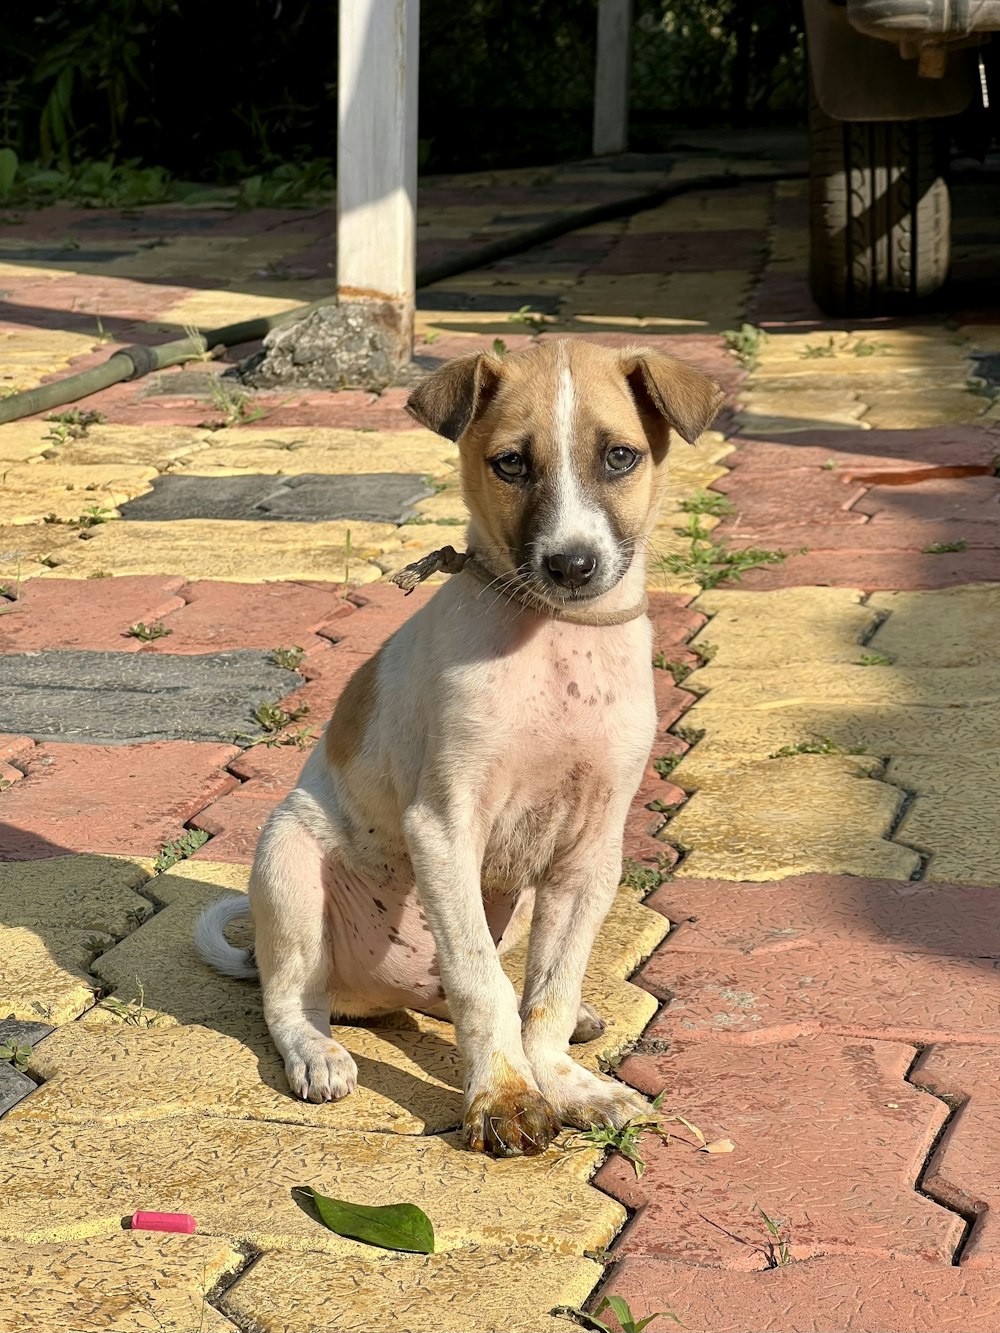 a dog sitting on a brick sidewalk